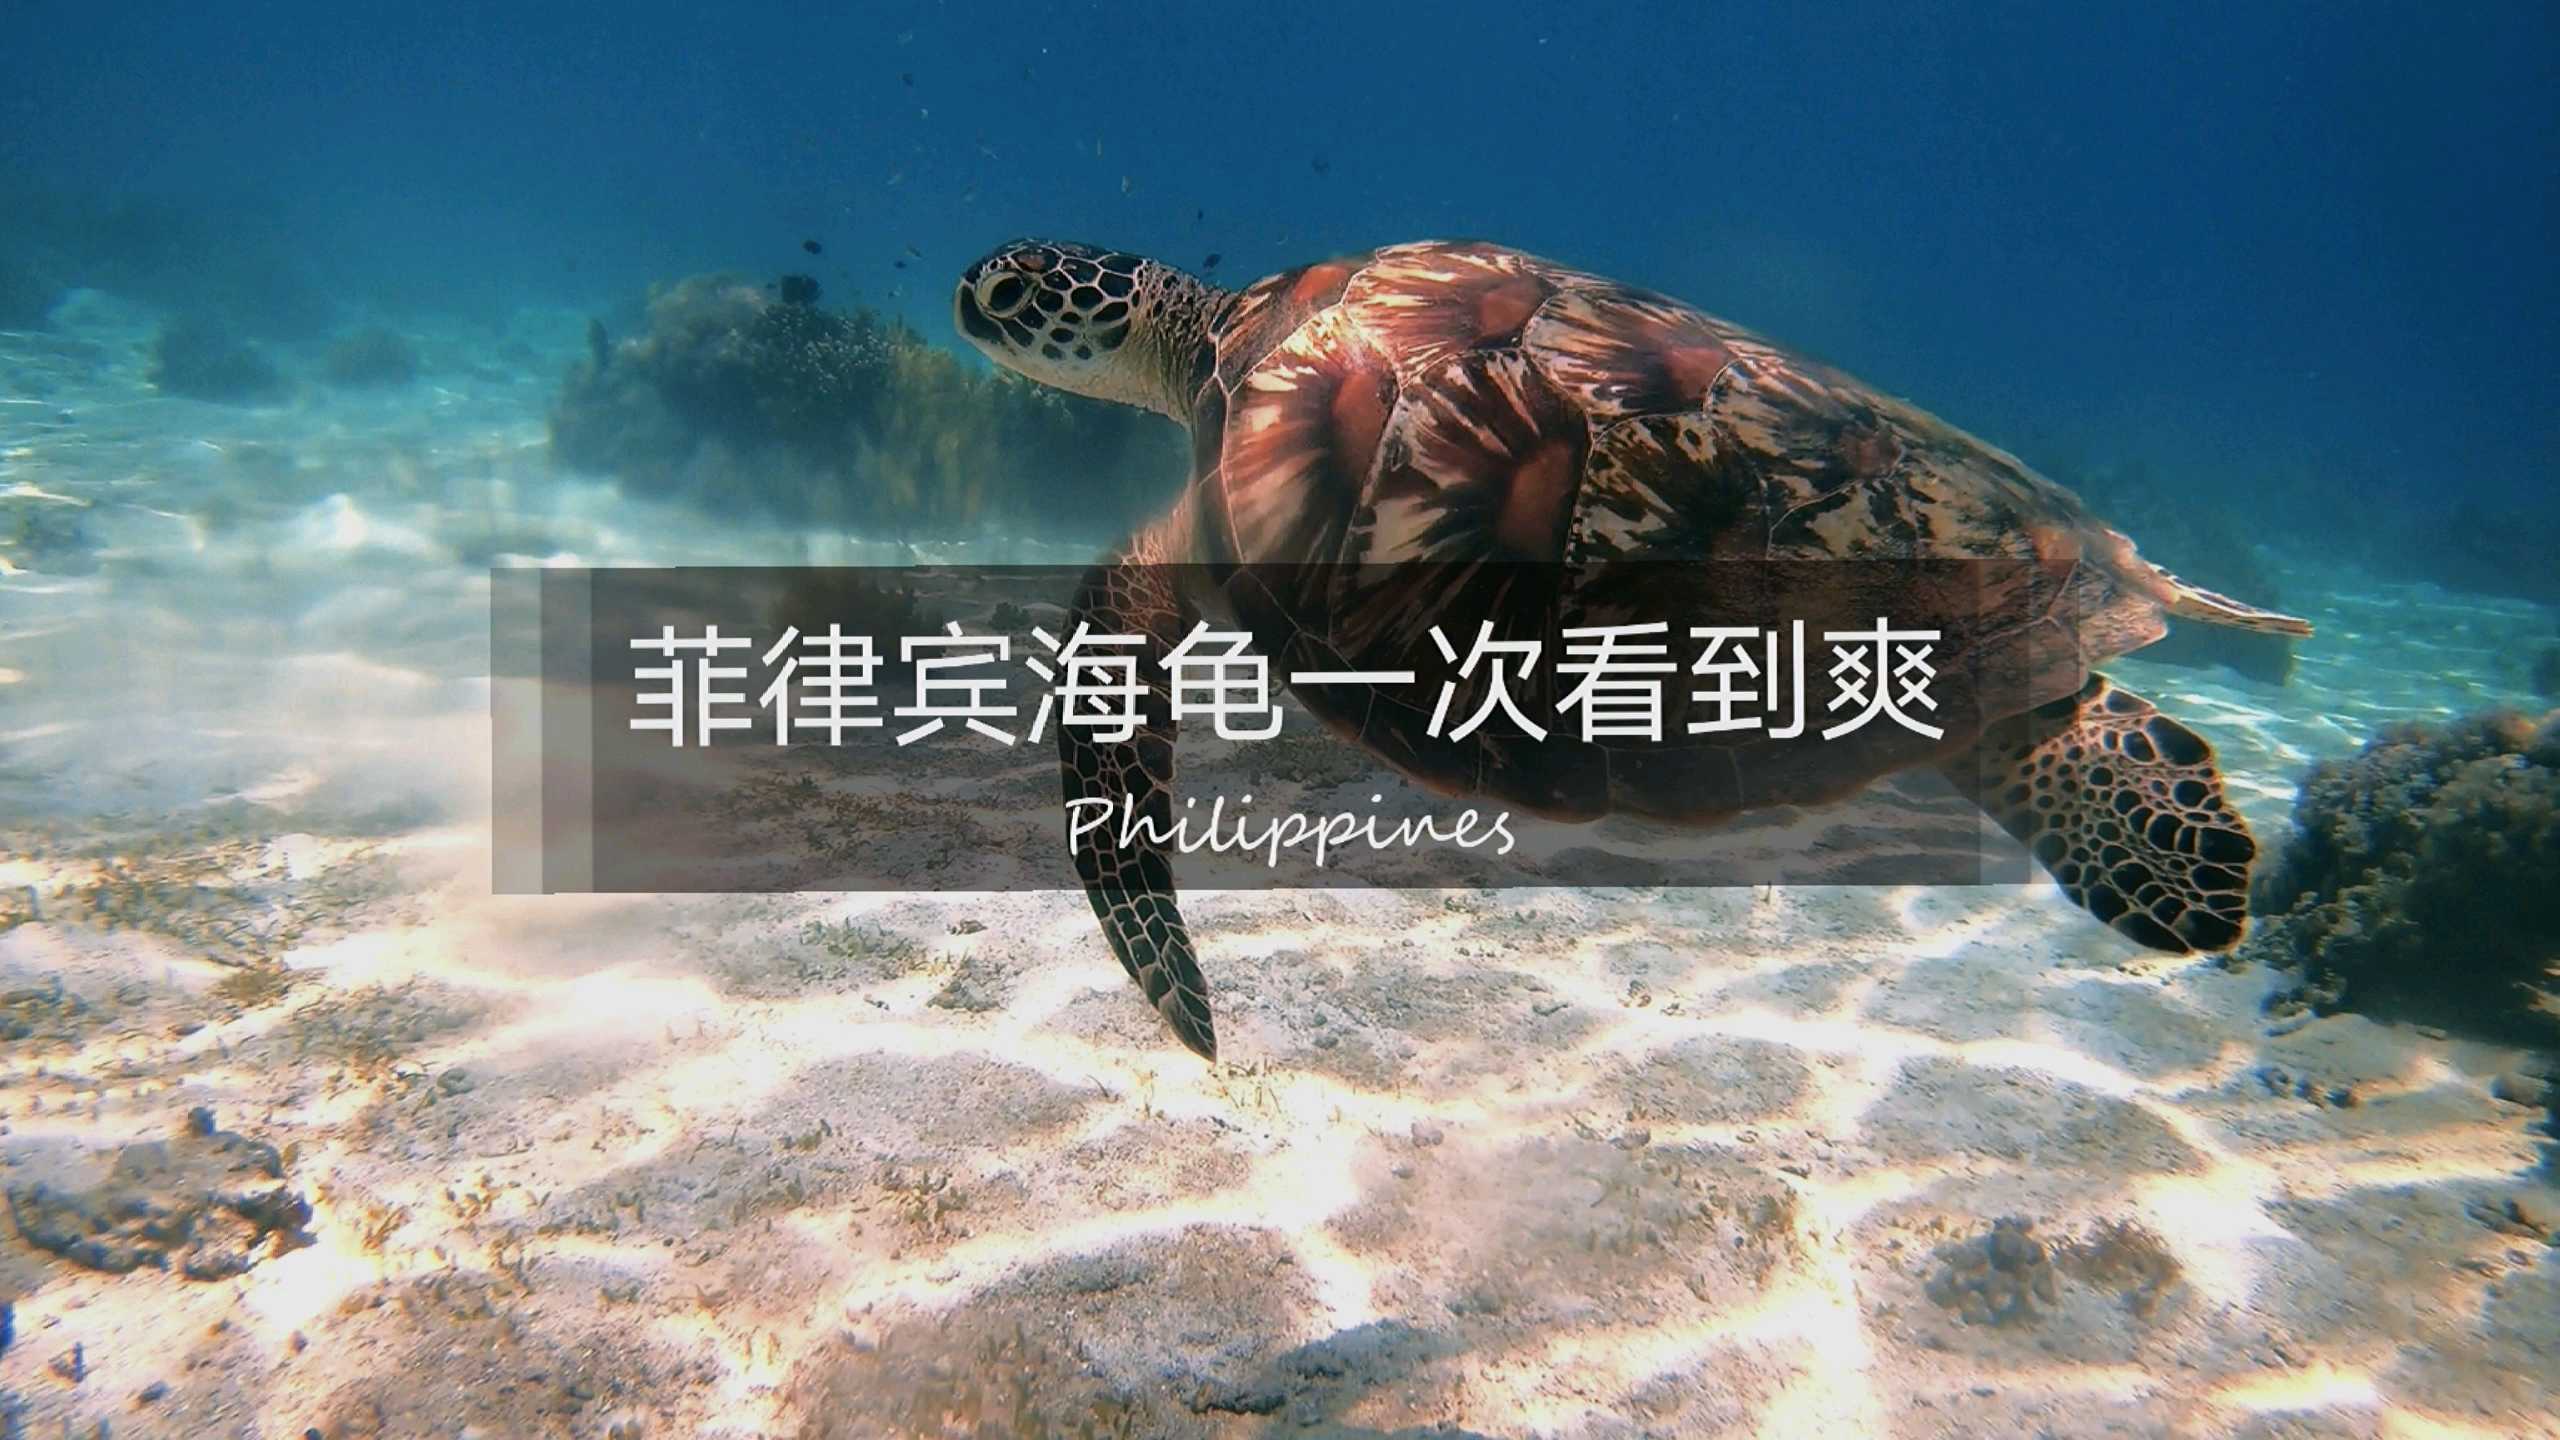 菲律宾 | 海龟一次看到爽！